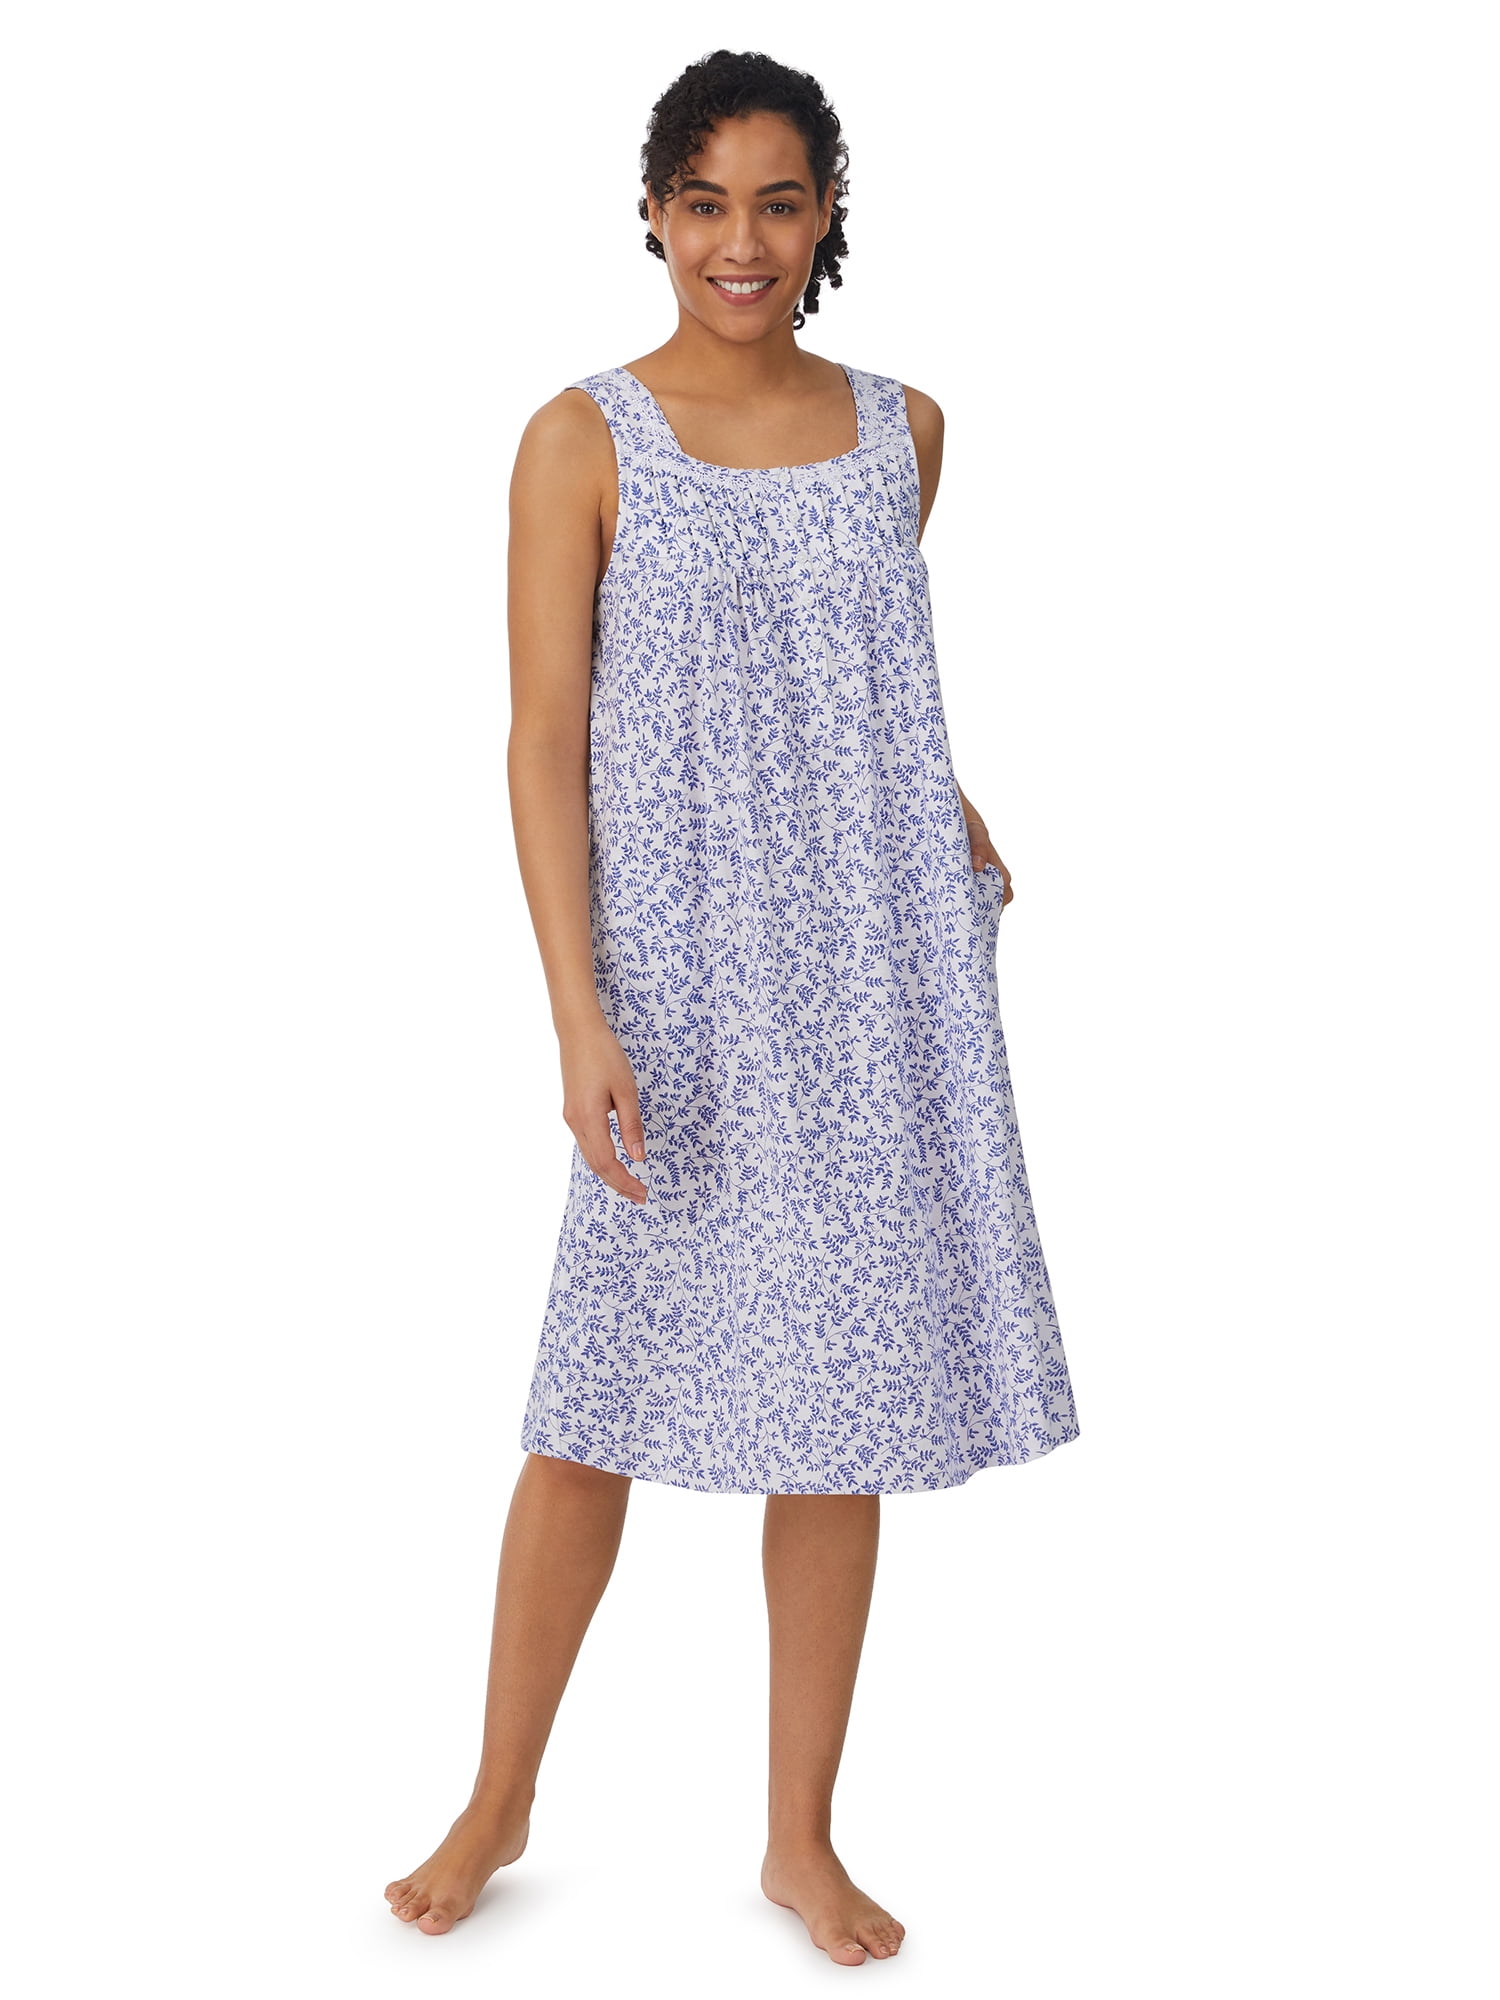 Aria Women's Sleeveless 100% Cotton Nightgown, Sizes S-5X